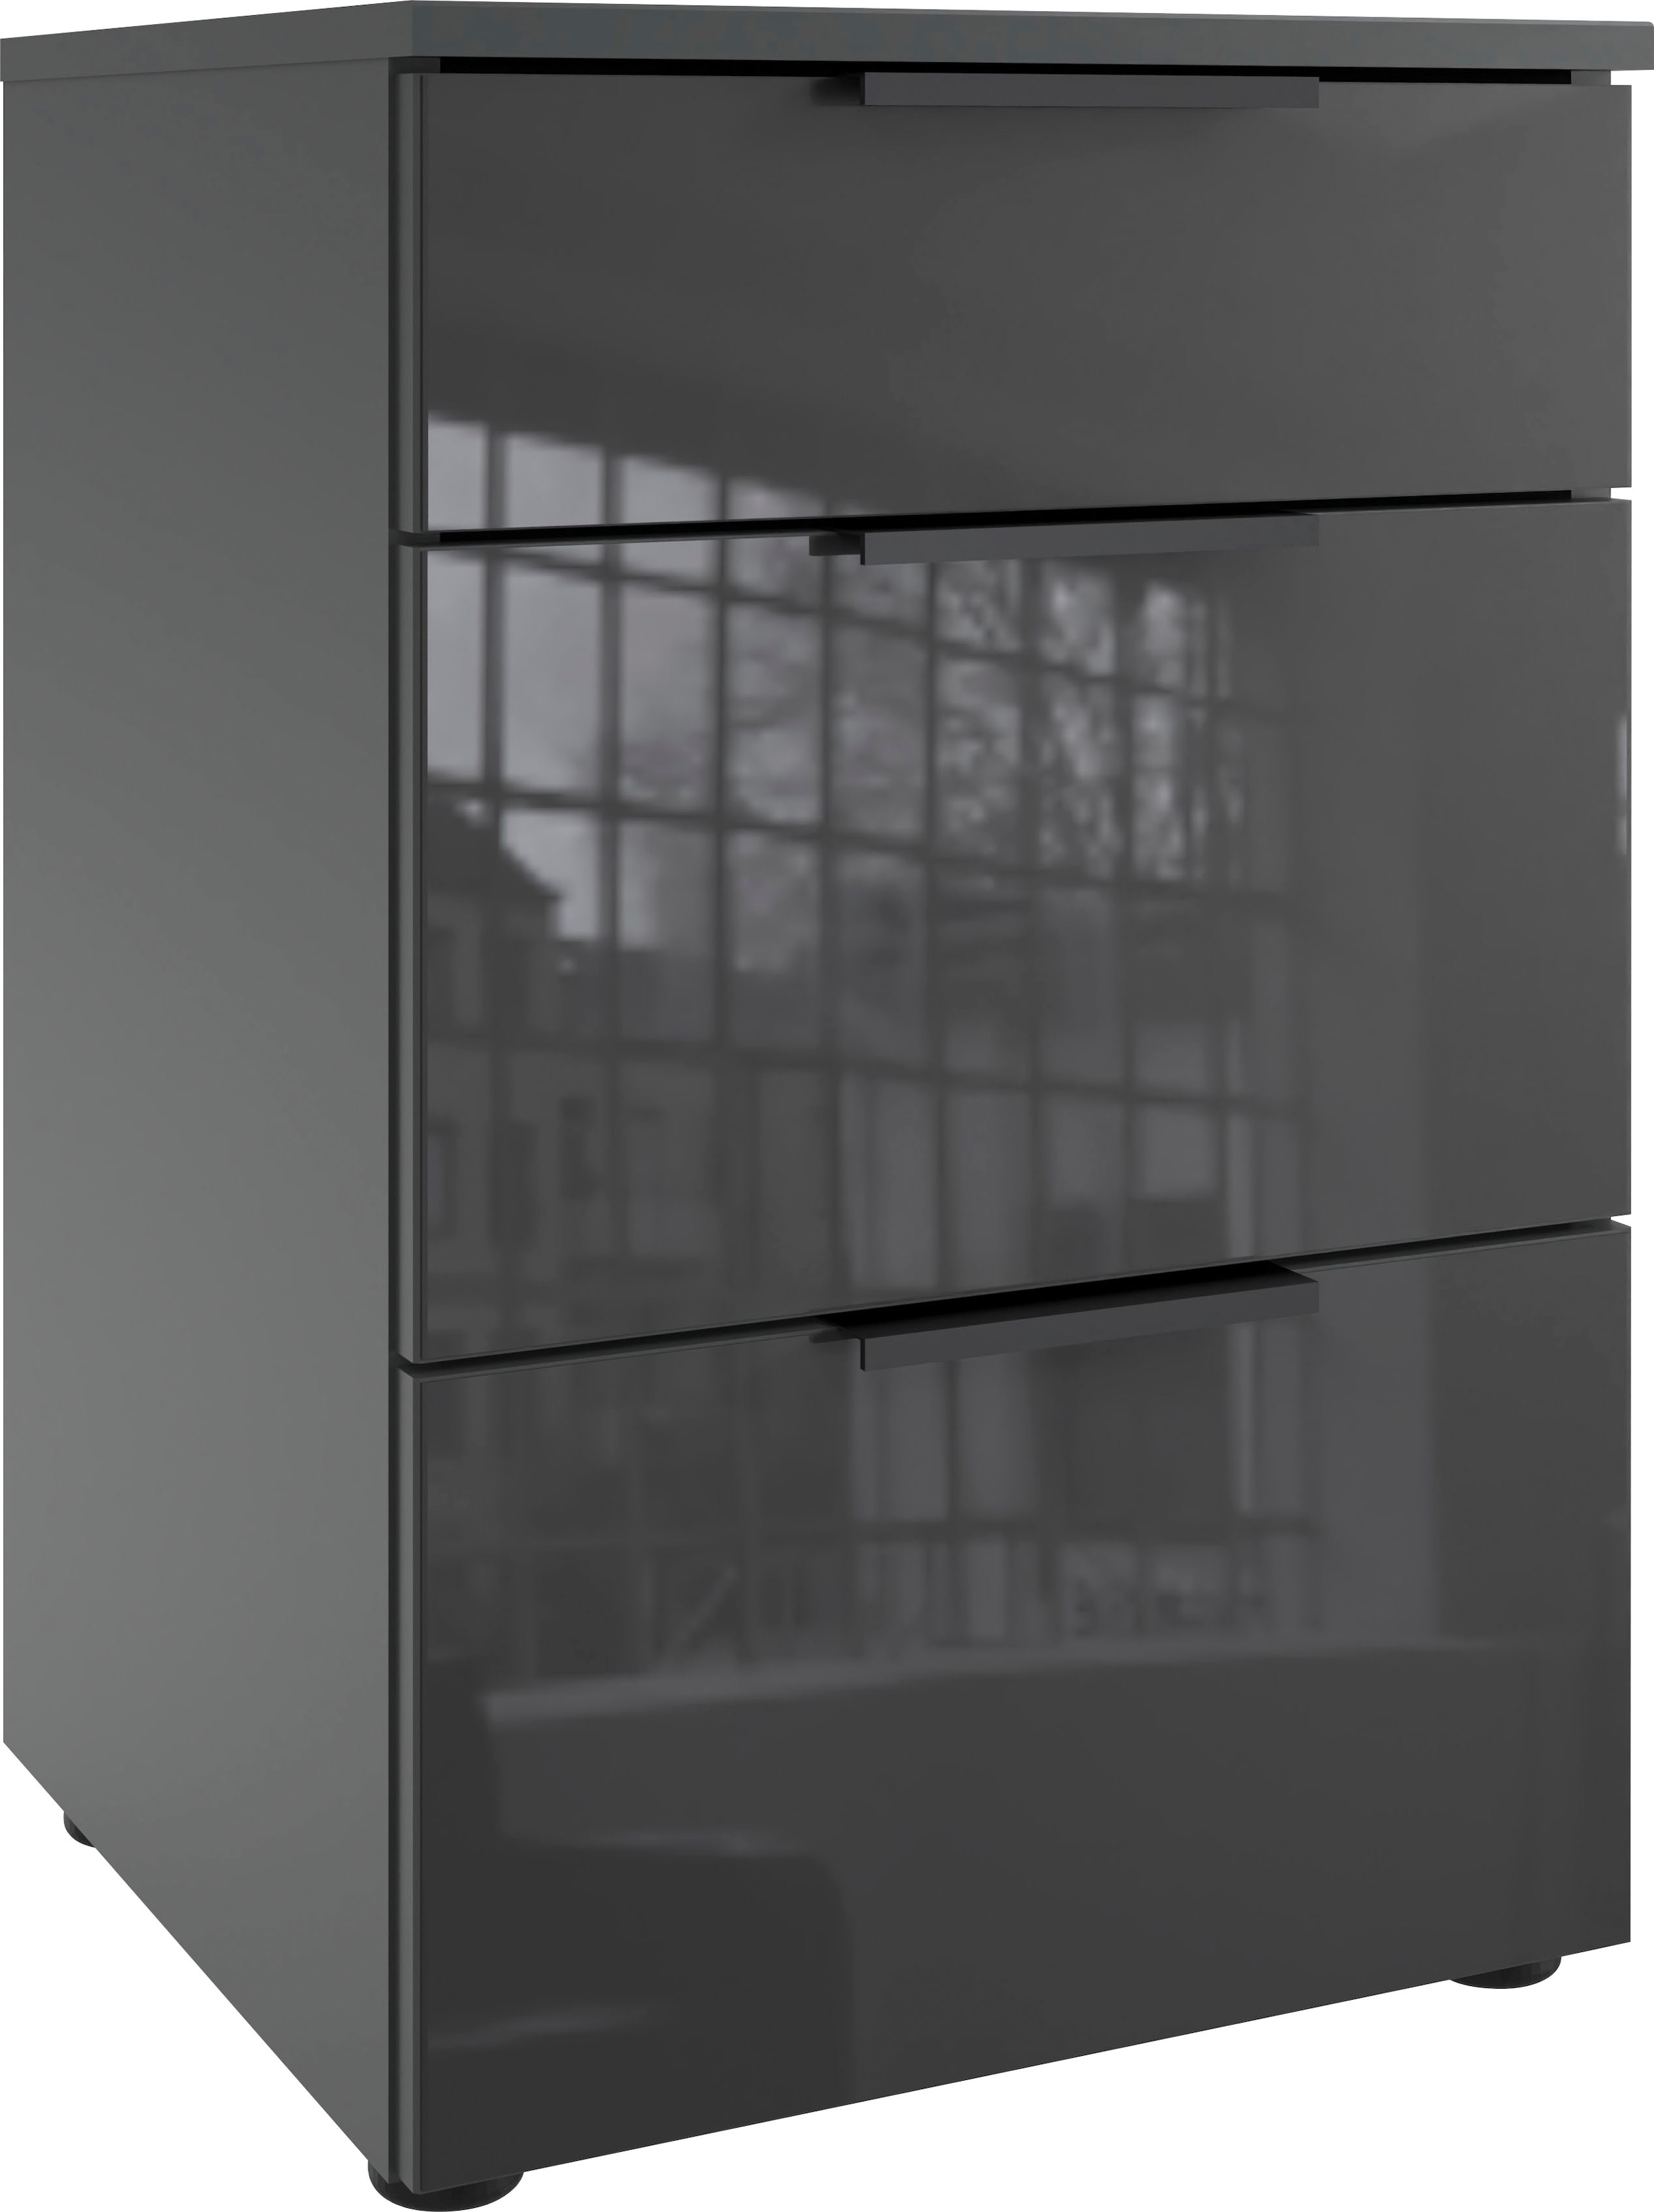 Wimex Nachtkommode »Level36 black C by fresh to go«, mit Glaselementen auf der Front, soft-close Funktion, 41cm breit